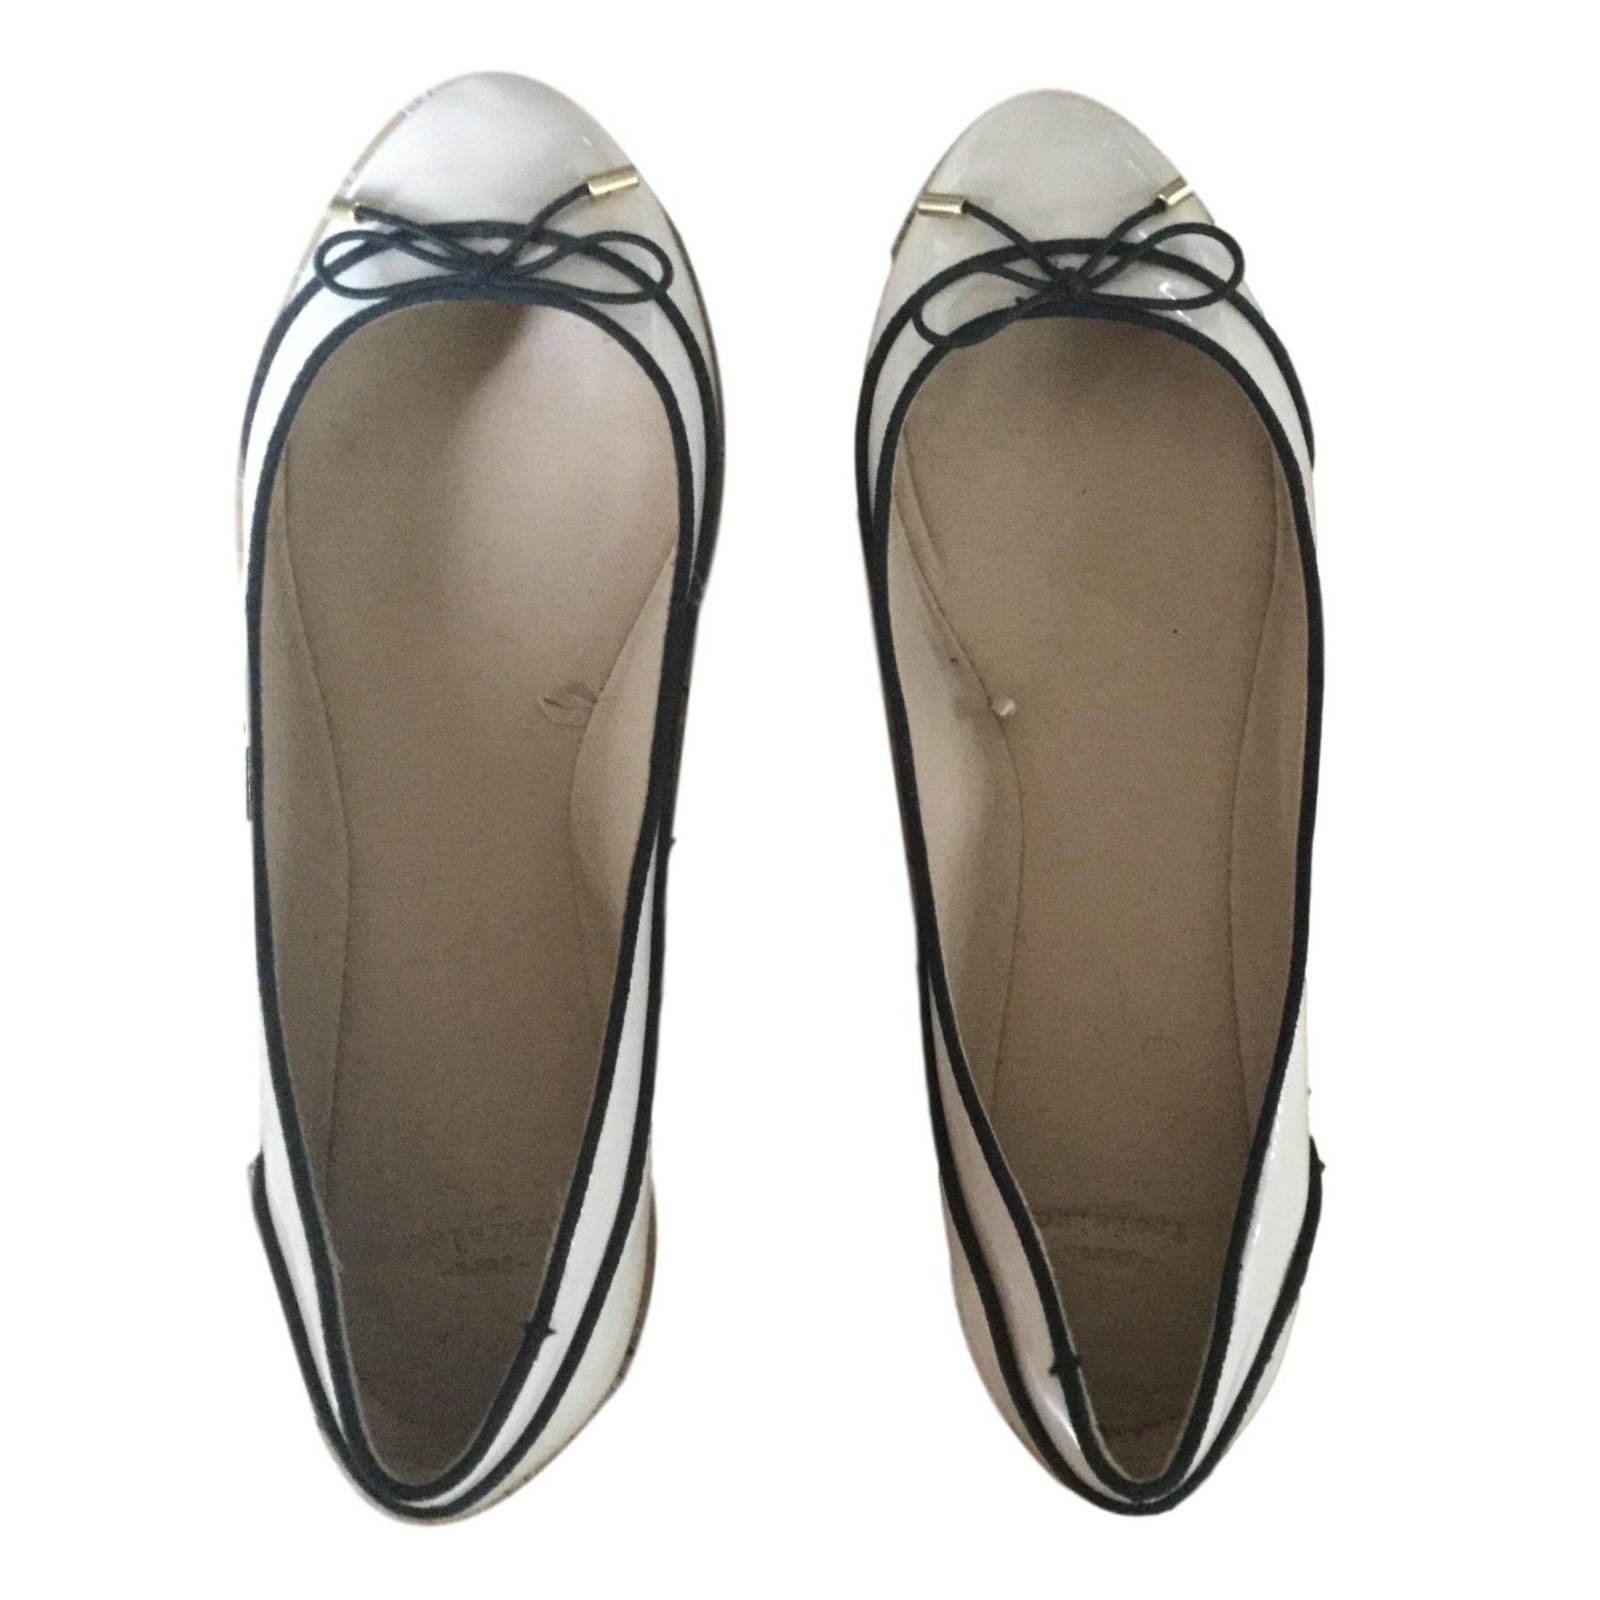 zara ballerina shoes